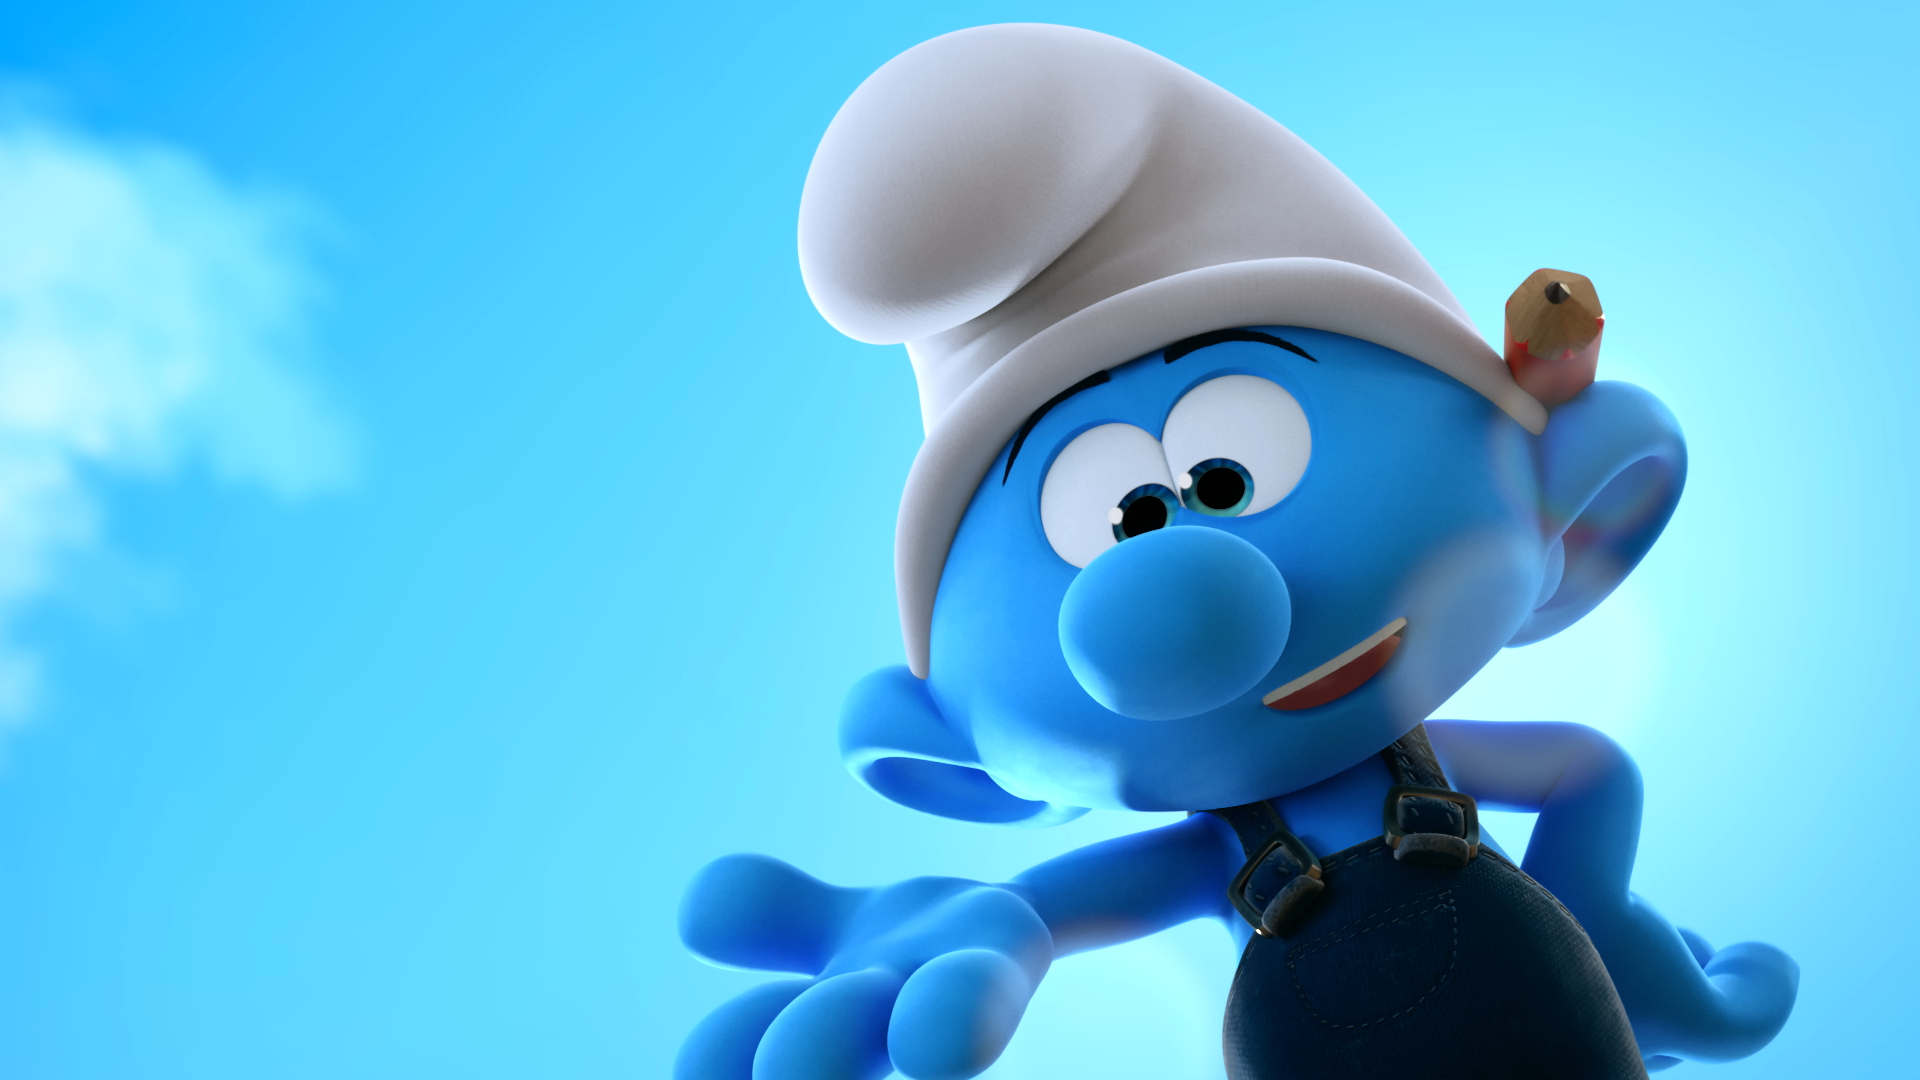 Smurf Happens: Beloved Blue Characters Enter Web3